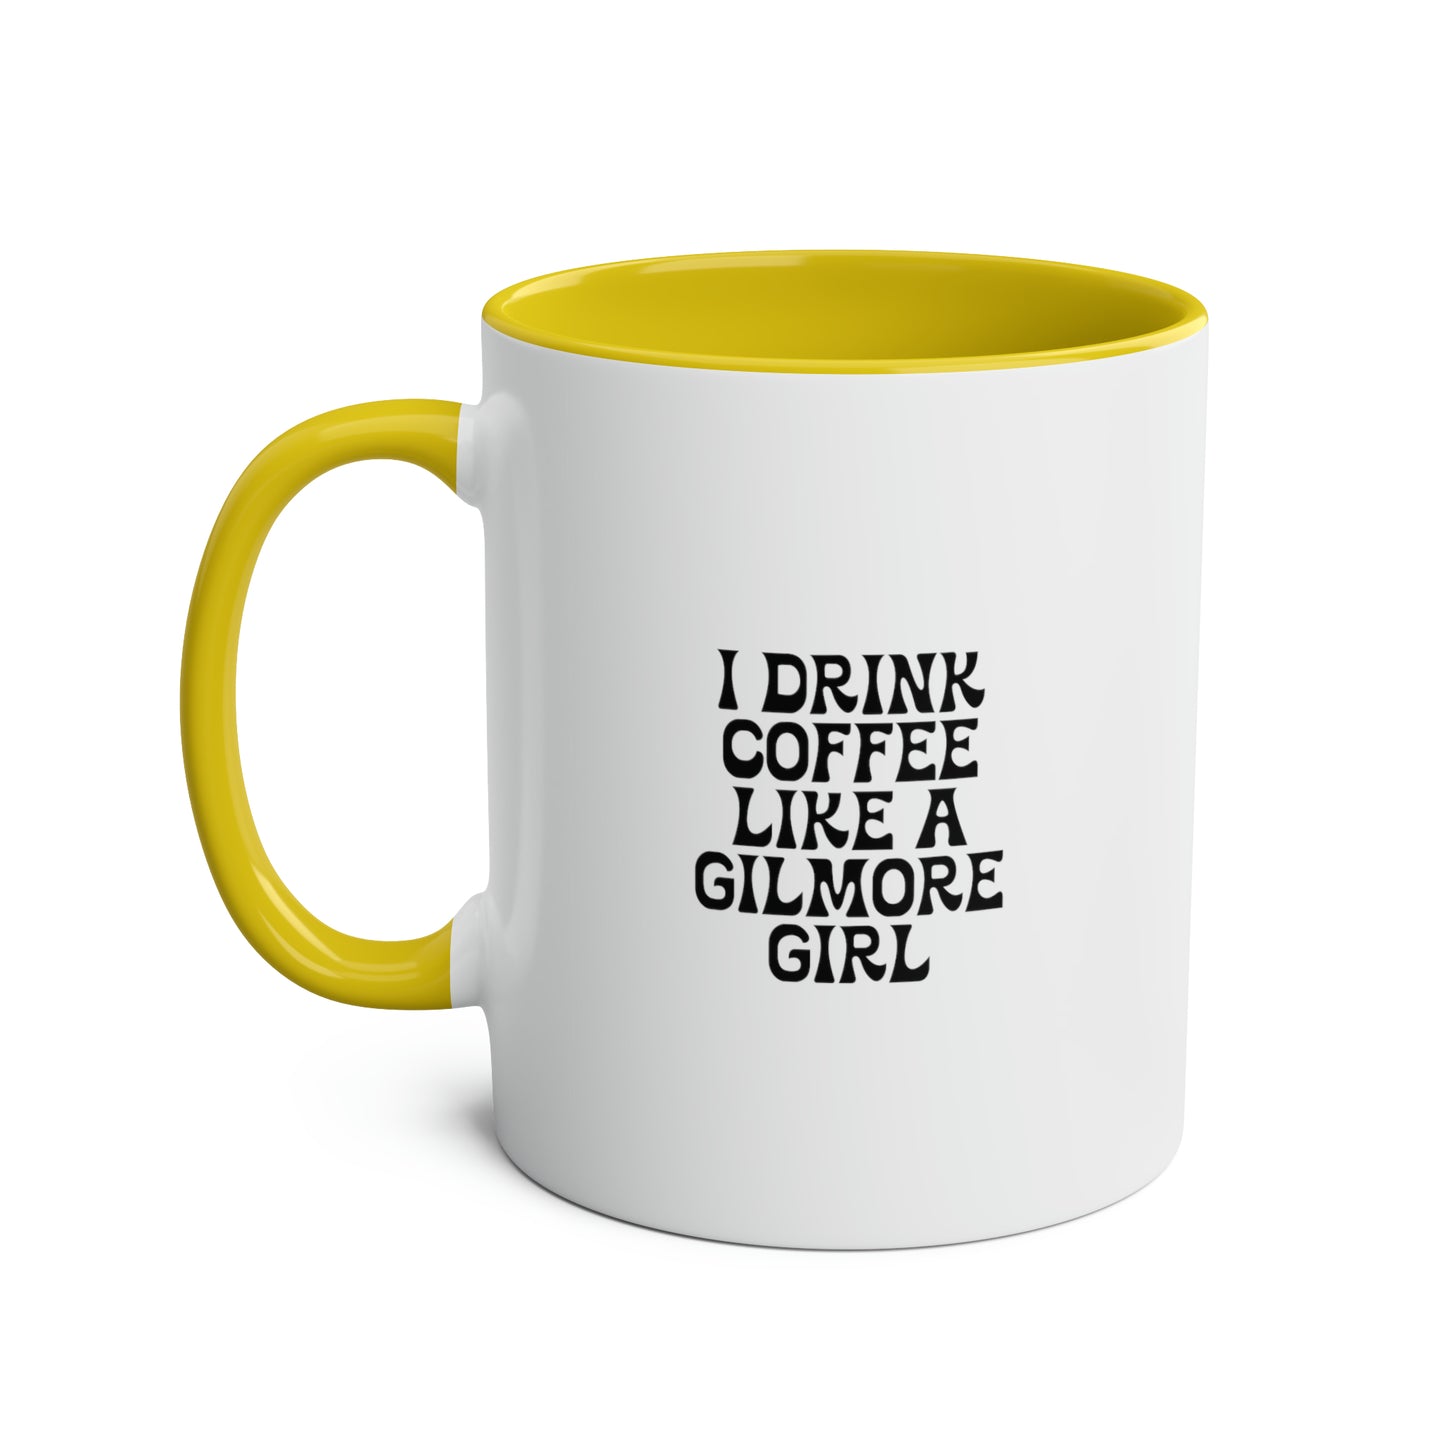 I Drink Coffee Like a Gilmore Girl / Gilmore Girls Mug